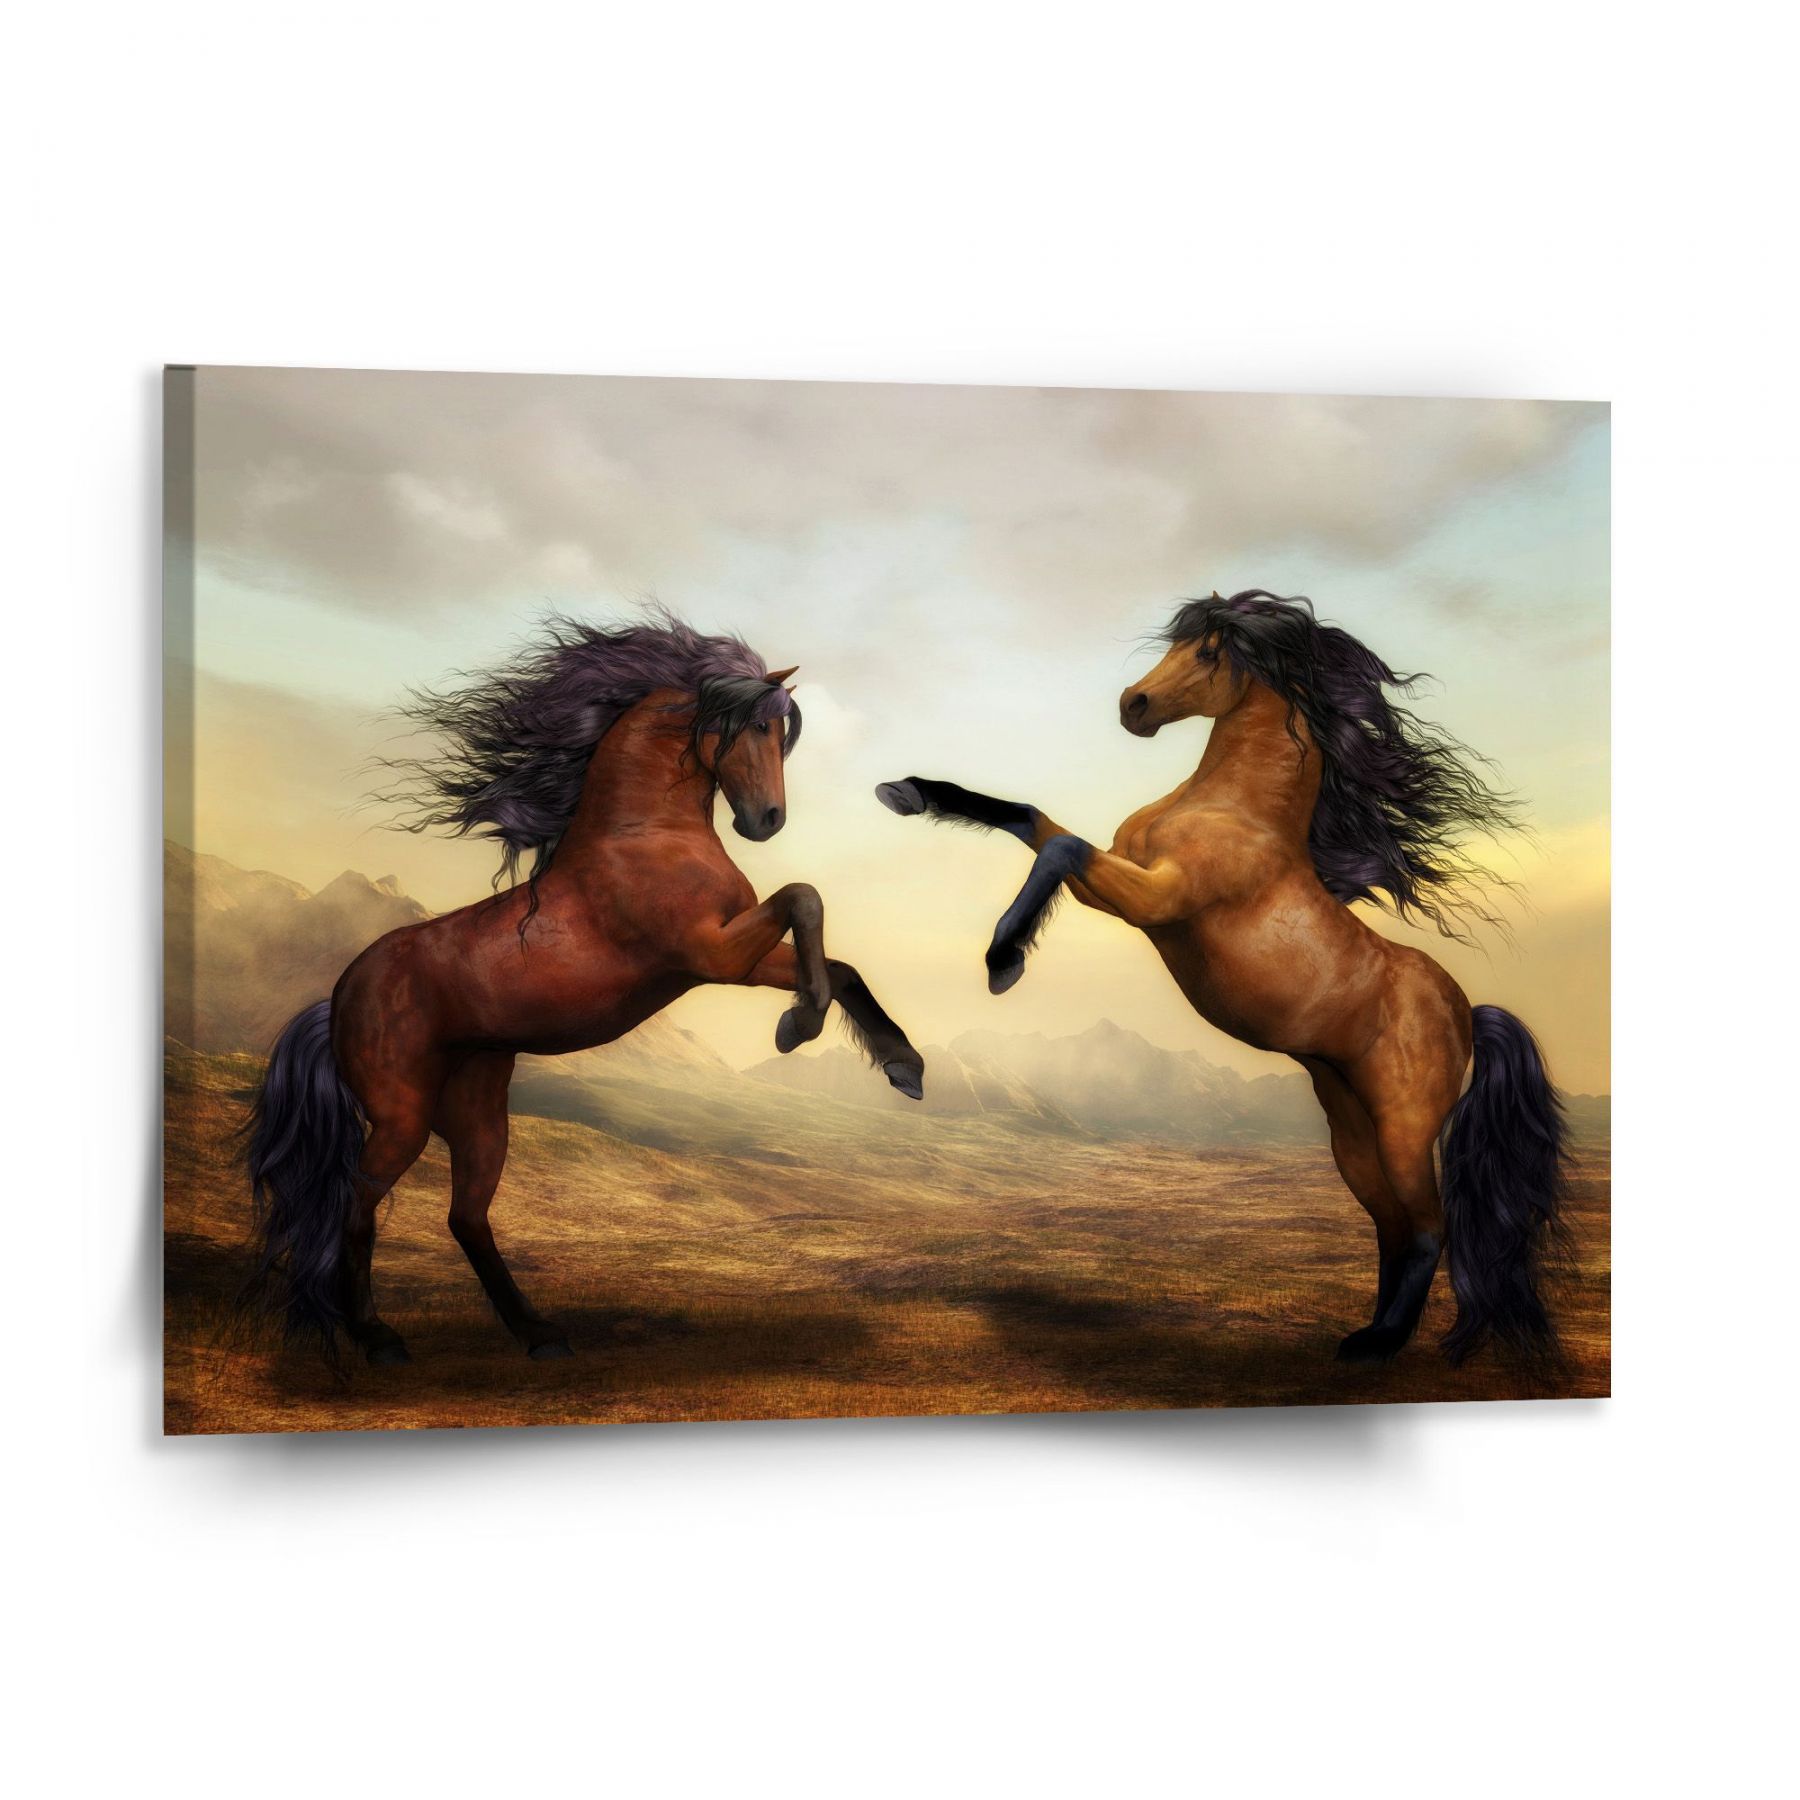 Obraz SABLIO - Vzpínající se koně 150x110 cm - E-shop Sablo s.r.o.